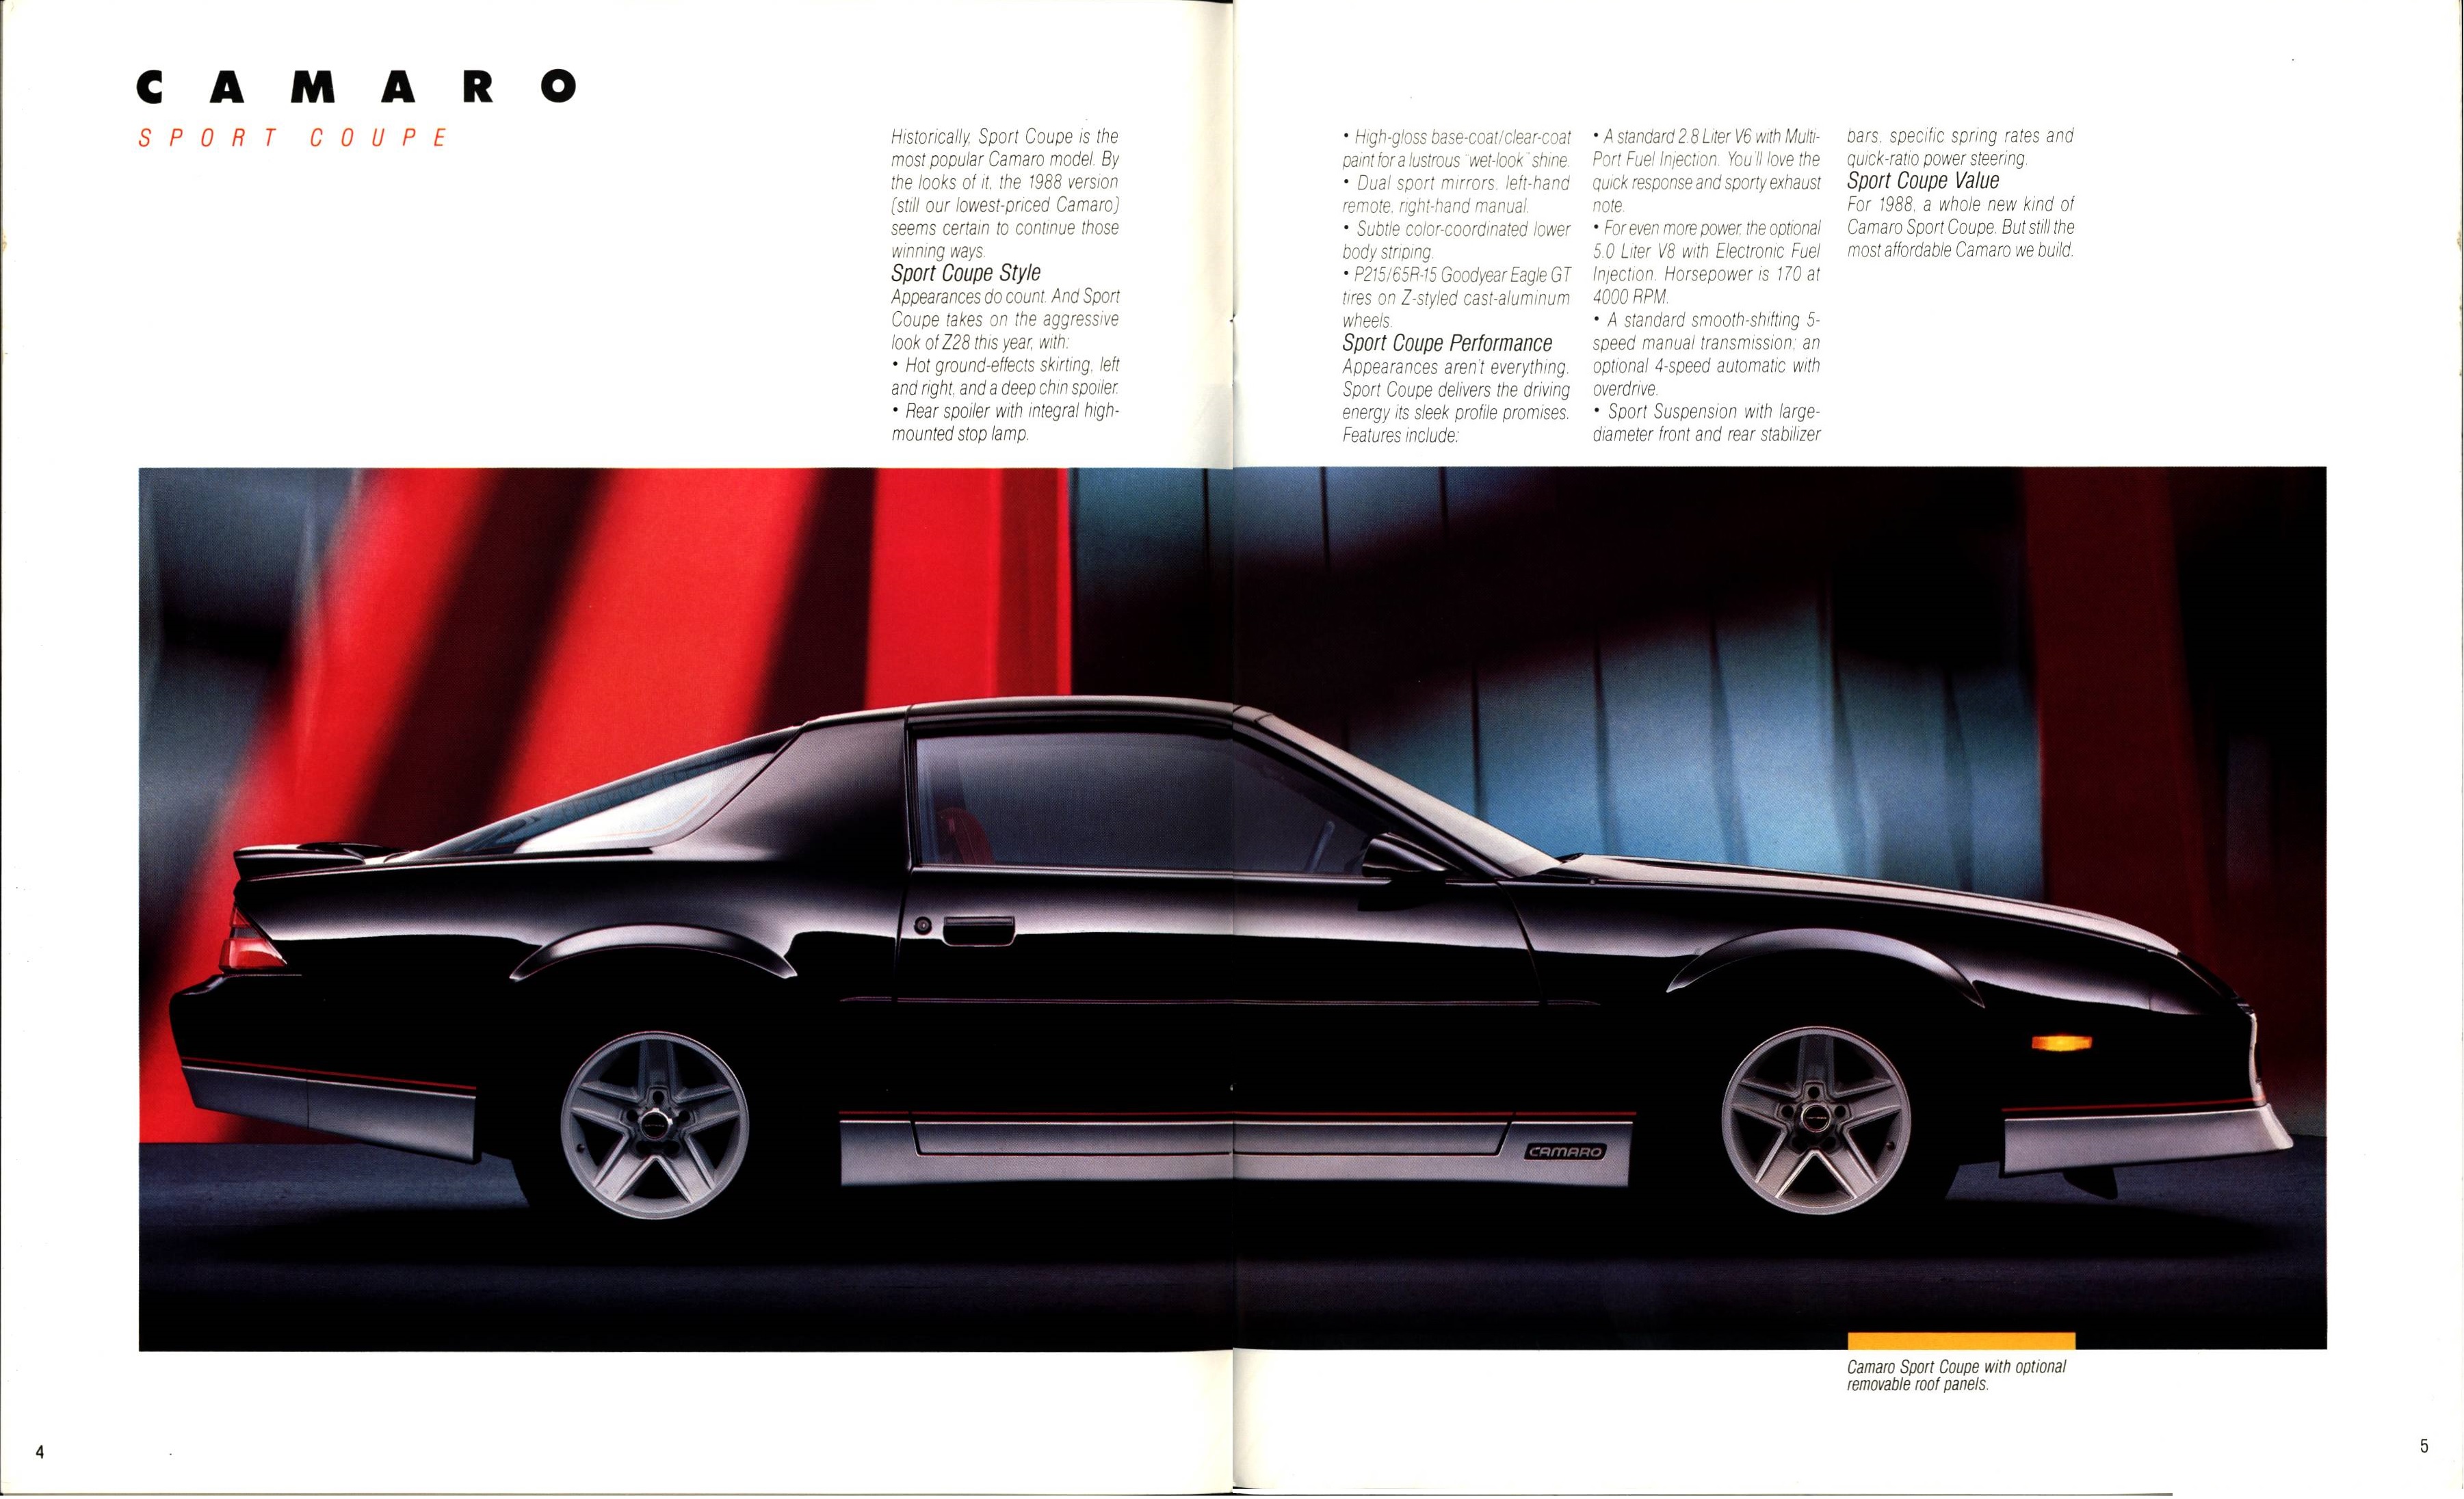 1988 Chevrolet Camaro Brochure 04-05